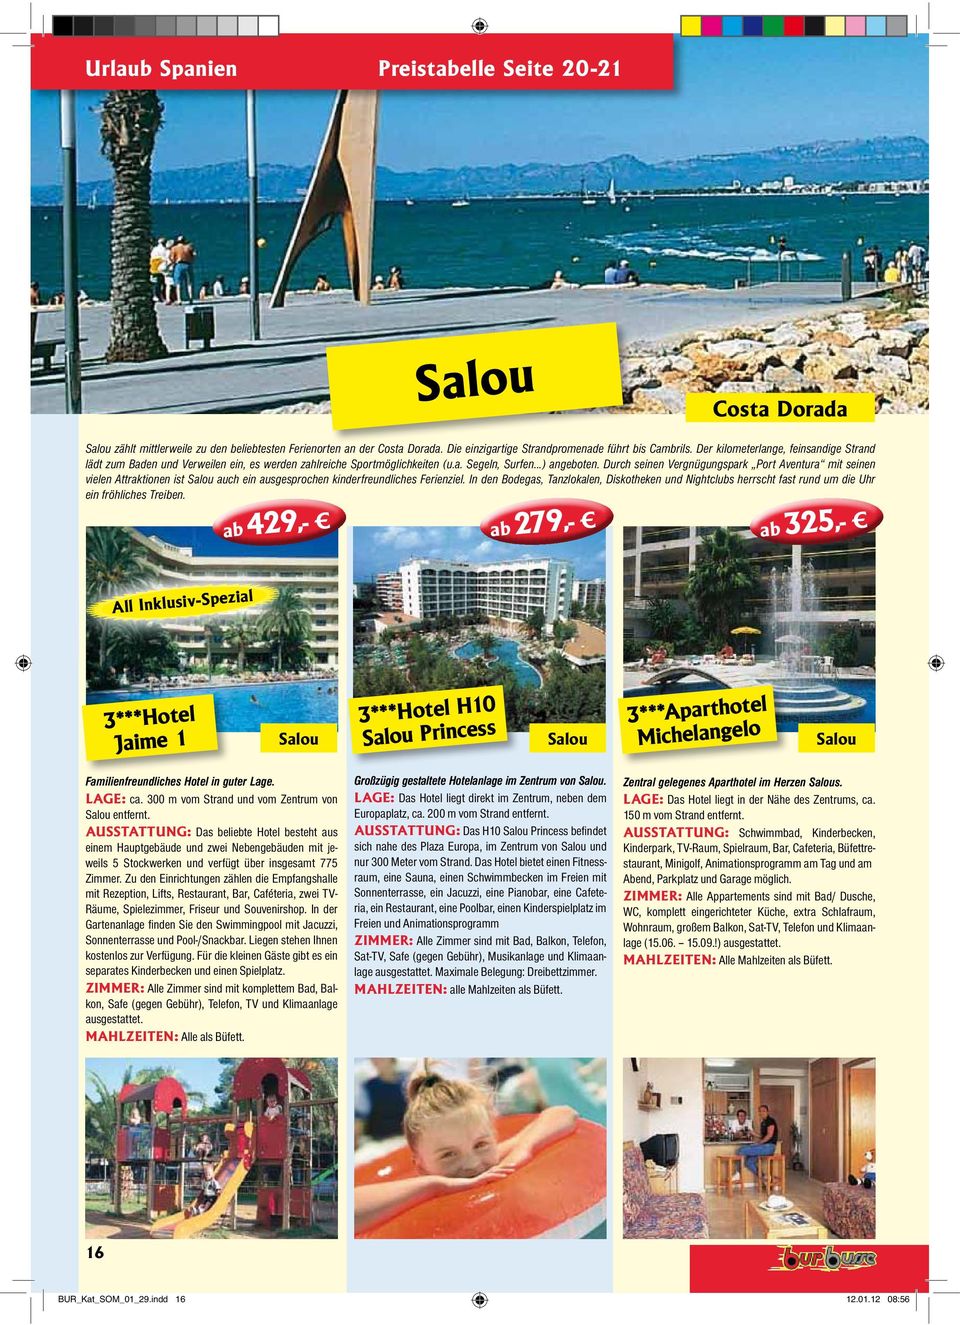 Durch seinen Vergnügungspark Port Aventura mit seinen vielen Attraktionen ist Salou auch ein ausgesprochen kinderfreundliches Ferienziel.